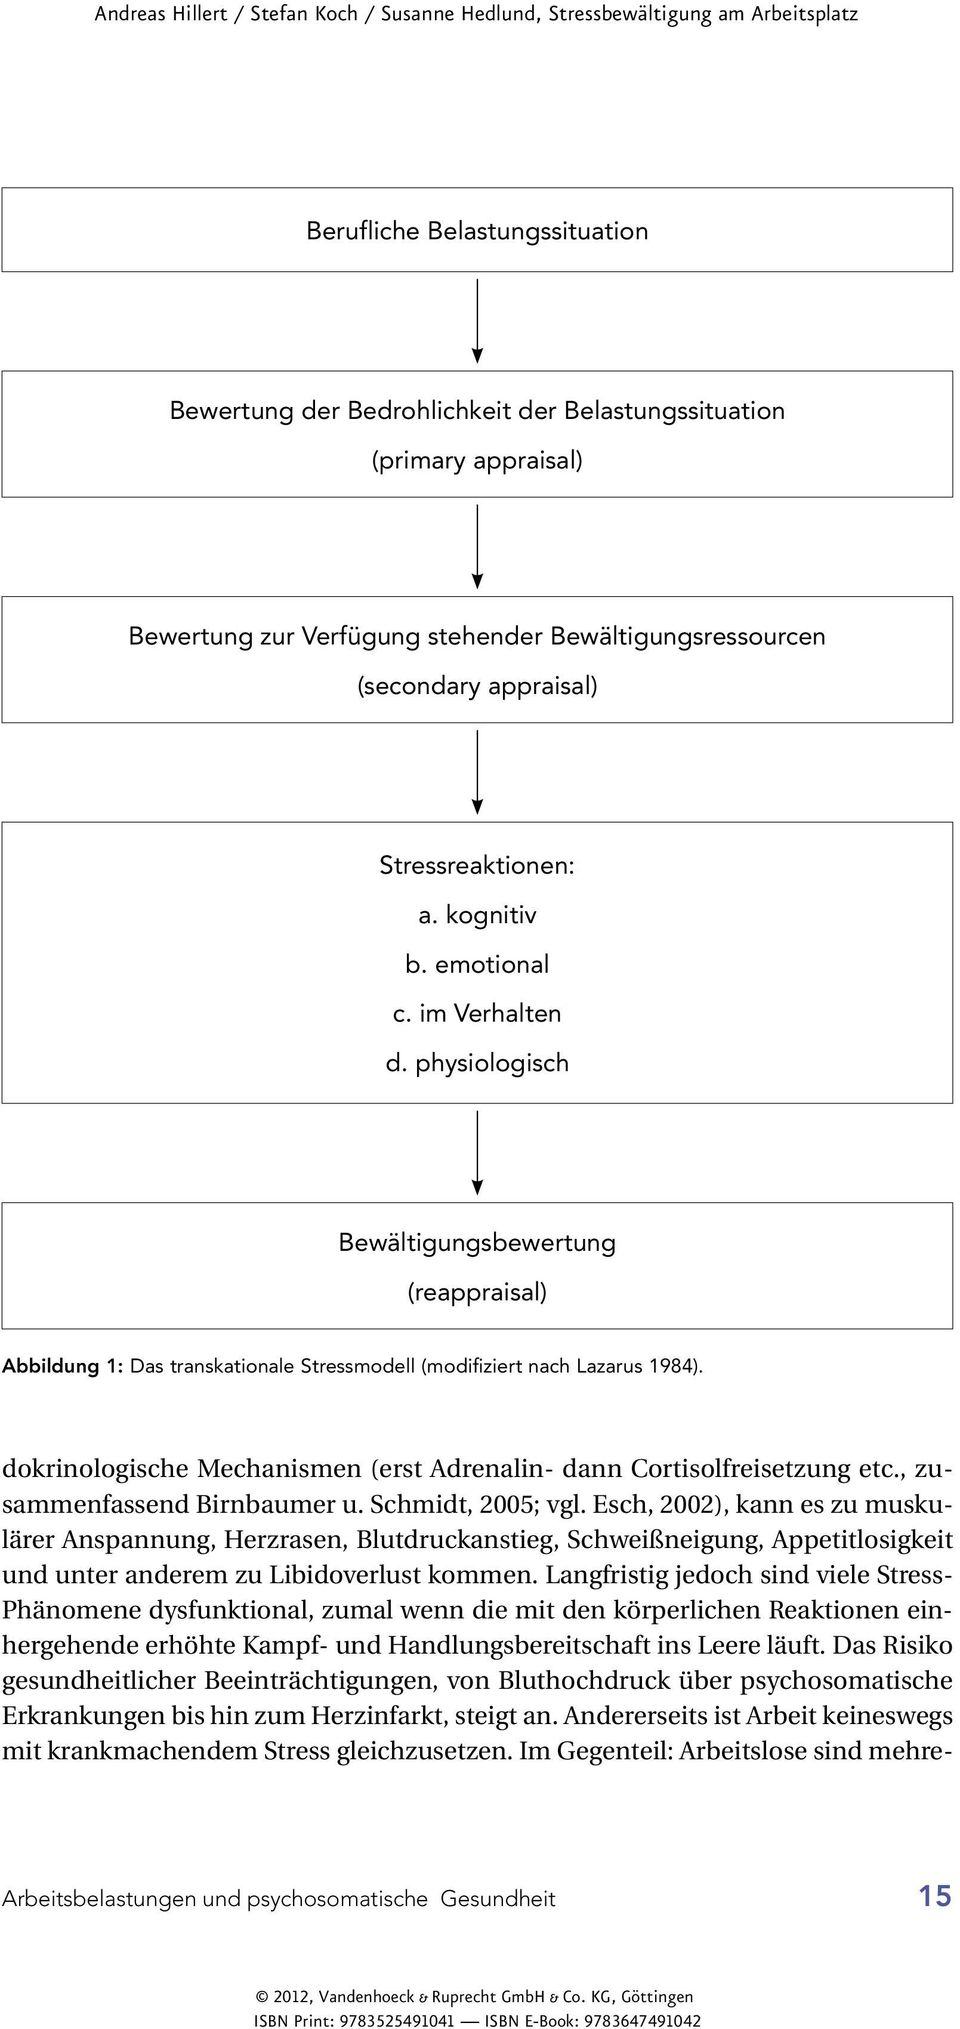 dokrinologische Mechanismen (erst Adrenalin- dann Cortisolfreisetzung etc., zusammenfassend Birnbaumer u. Schmidt, 2005; vgl.